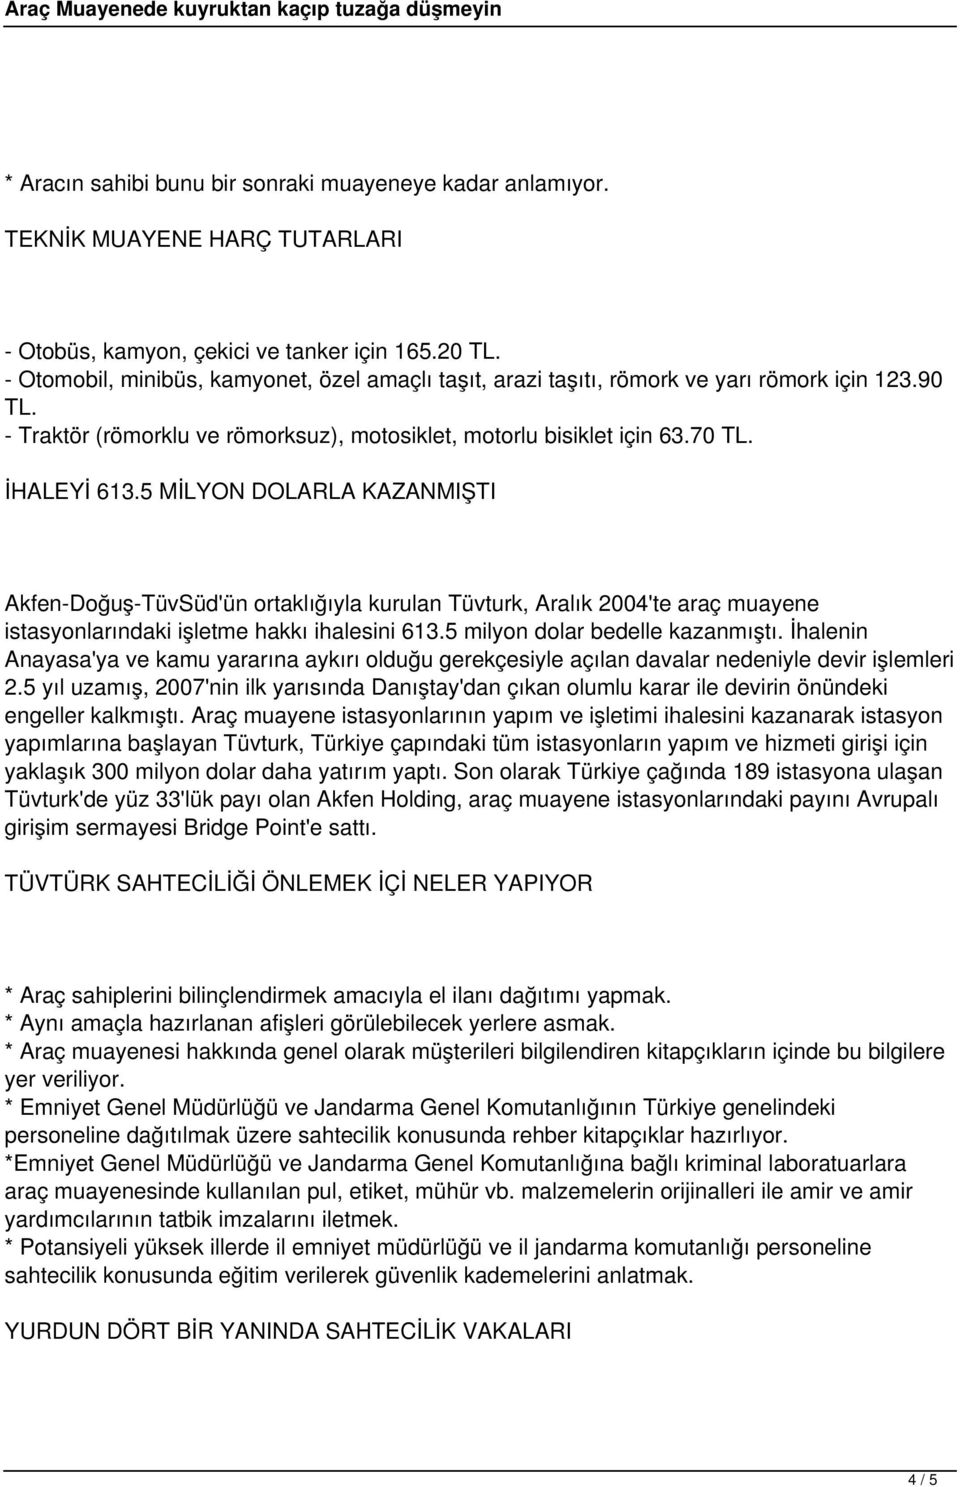 5 MİLYON DOLARLA KAZANMIŞTI Akfen-Doğuş-TüvSüd'ün ortaklığıyla kurulan Tüvturk, Aralık 2004'te araç muayene istasyonlarındaki işletme hakkı ihalesini 613.5 milyon dolar bedelle kazanmıştı.